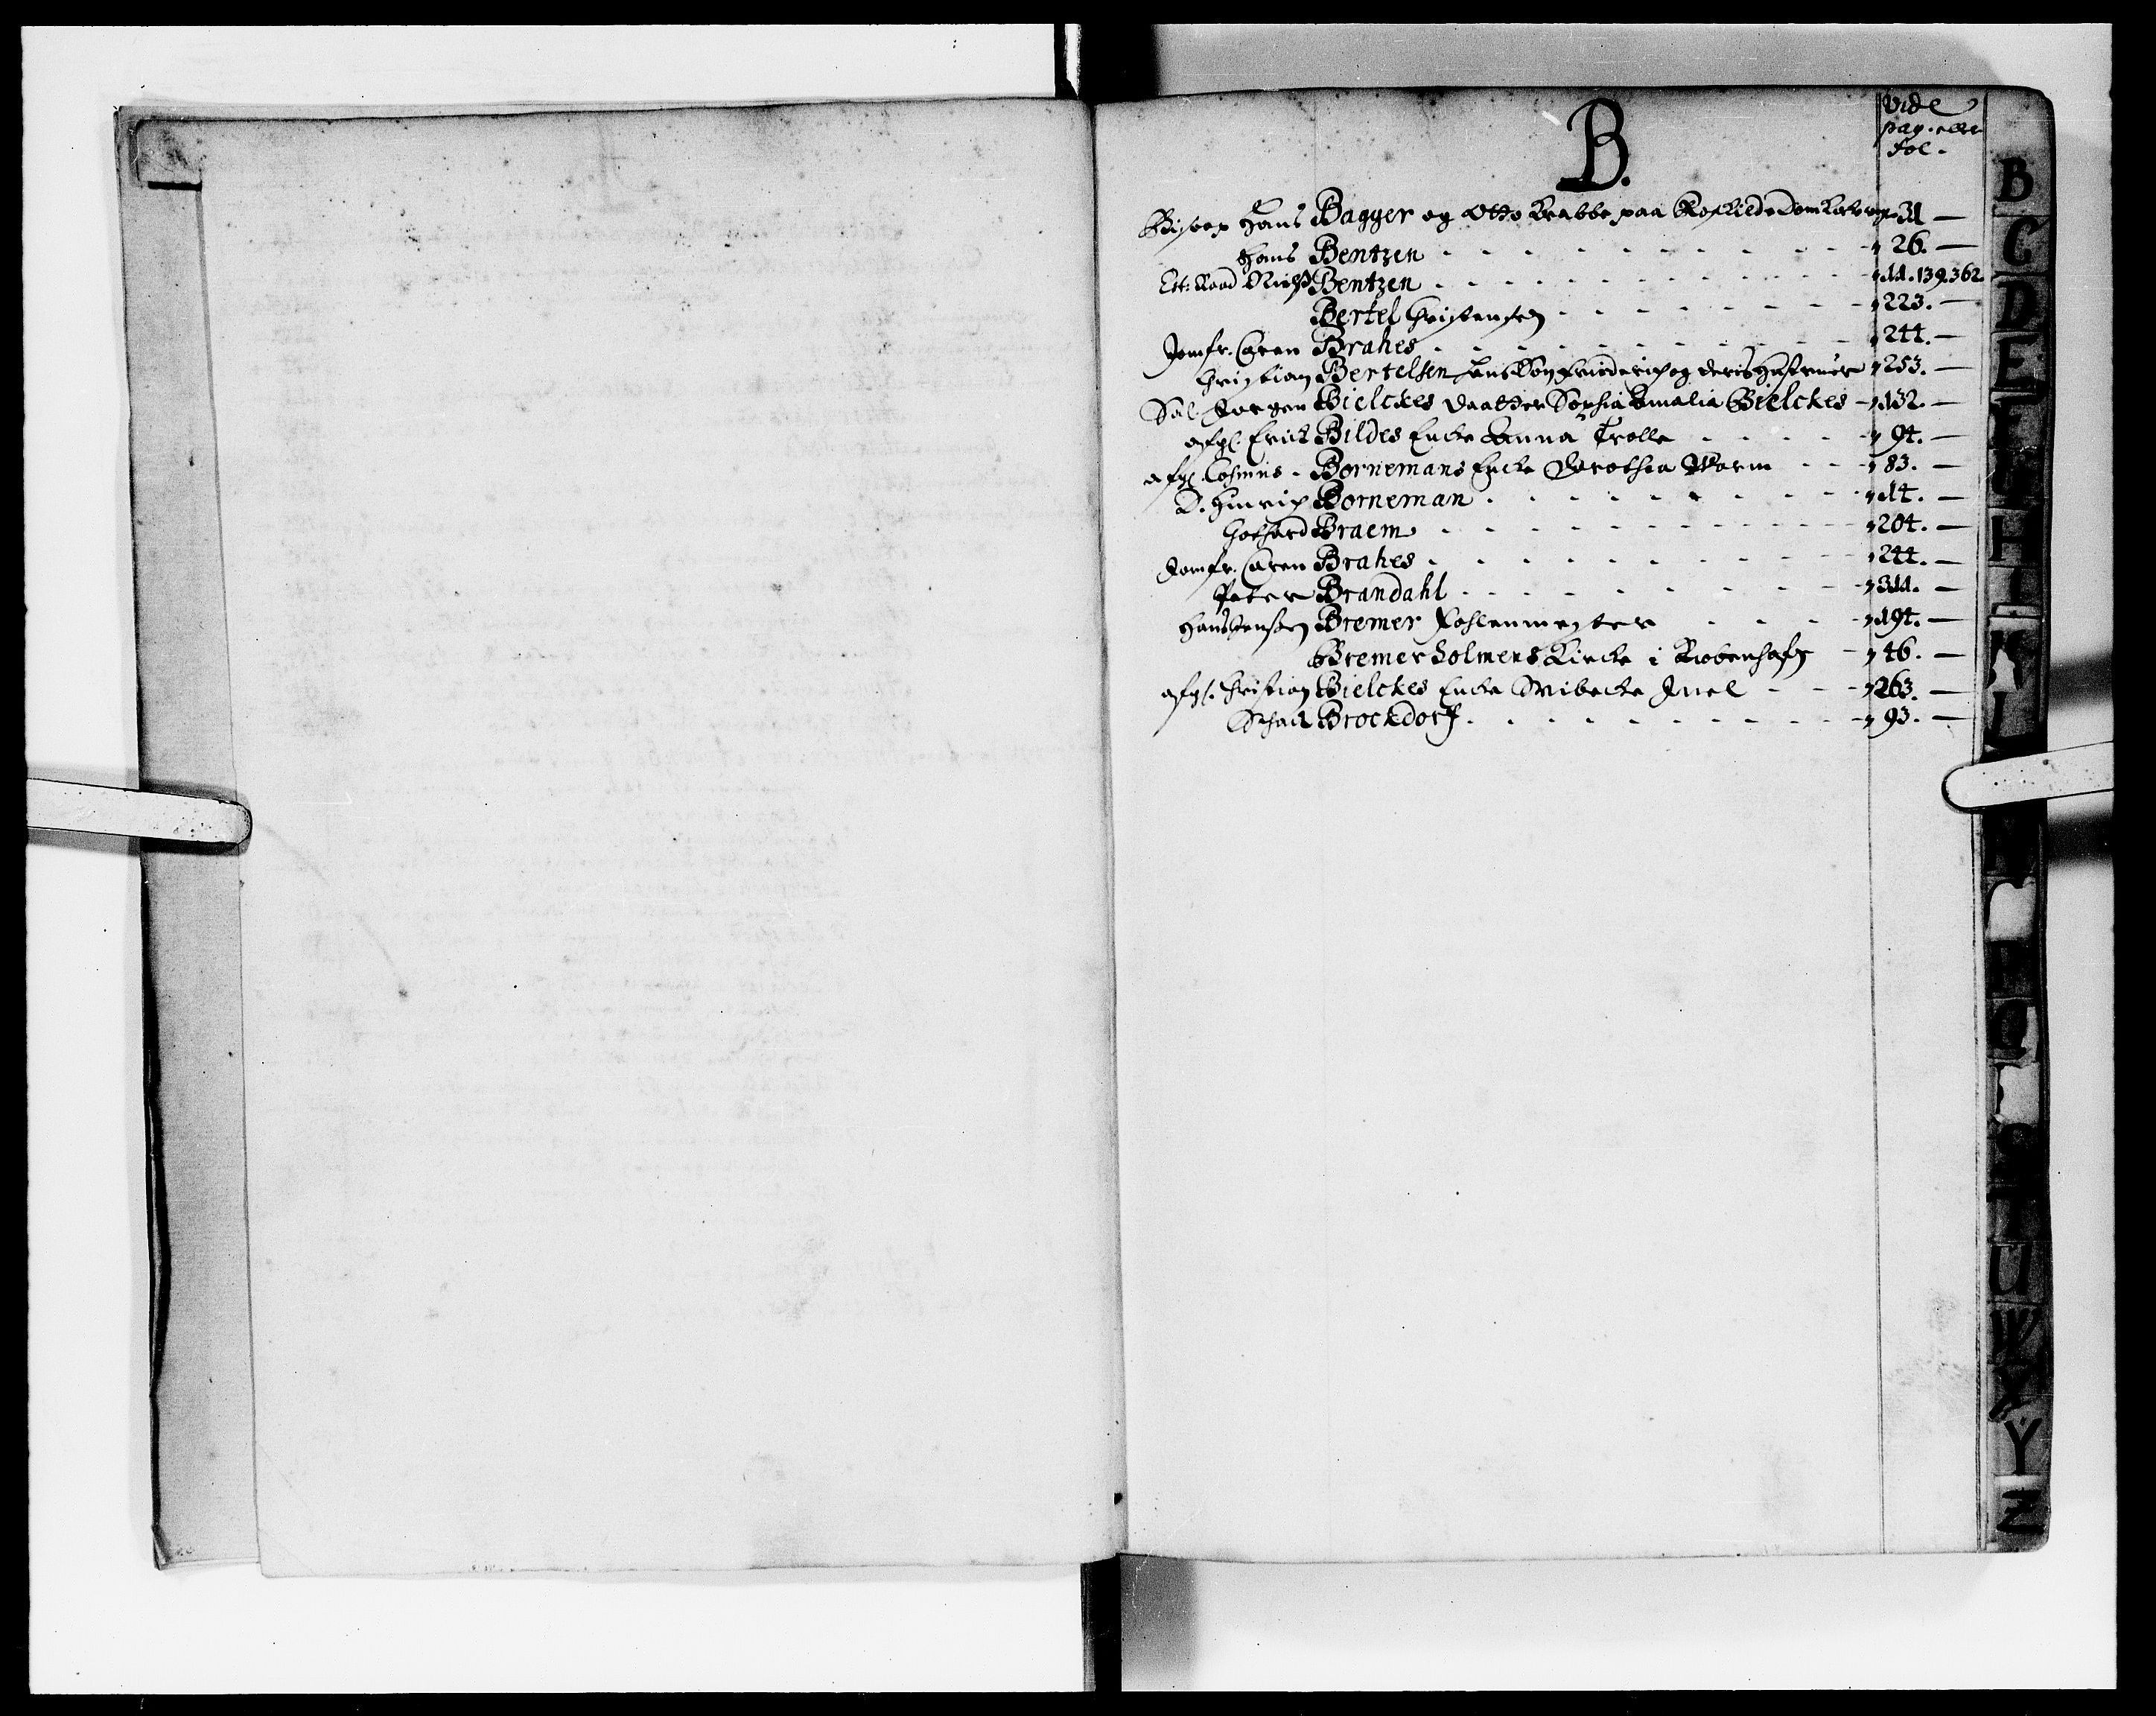 Rentekammeret Skatkammeret, Danske Sekretariat (1660-1679) / Rentekammeret Danske Afdeling, Kammerkancelliet (1679-1771), DRA/A-0007/-/2212-09: Ekspeditionsprotokol, 1692-1694